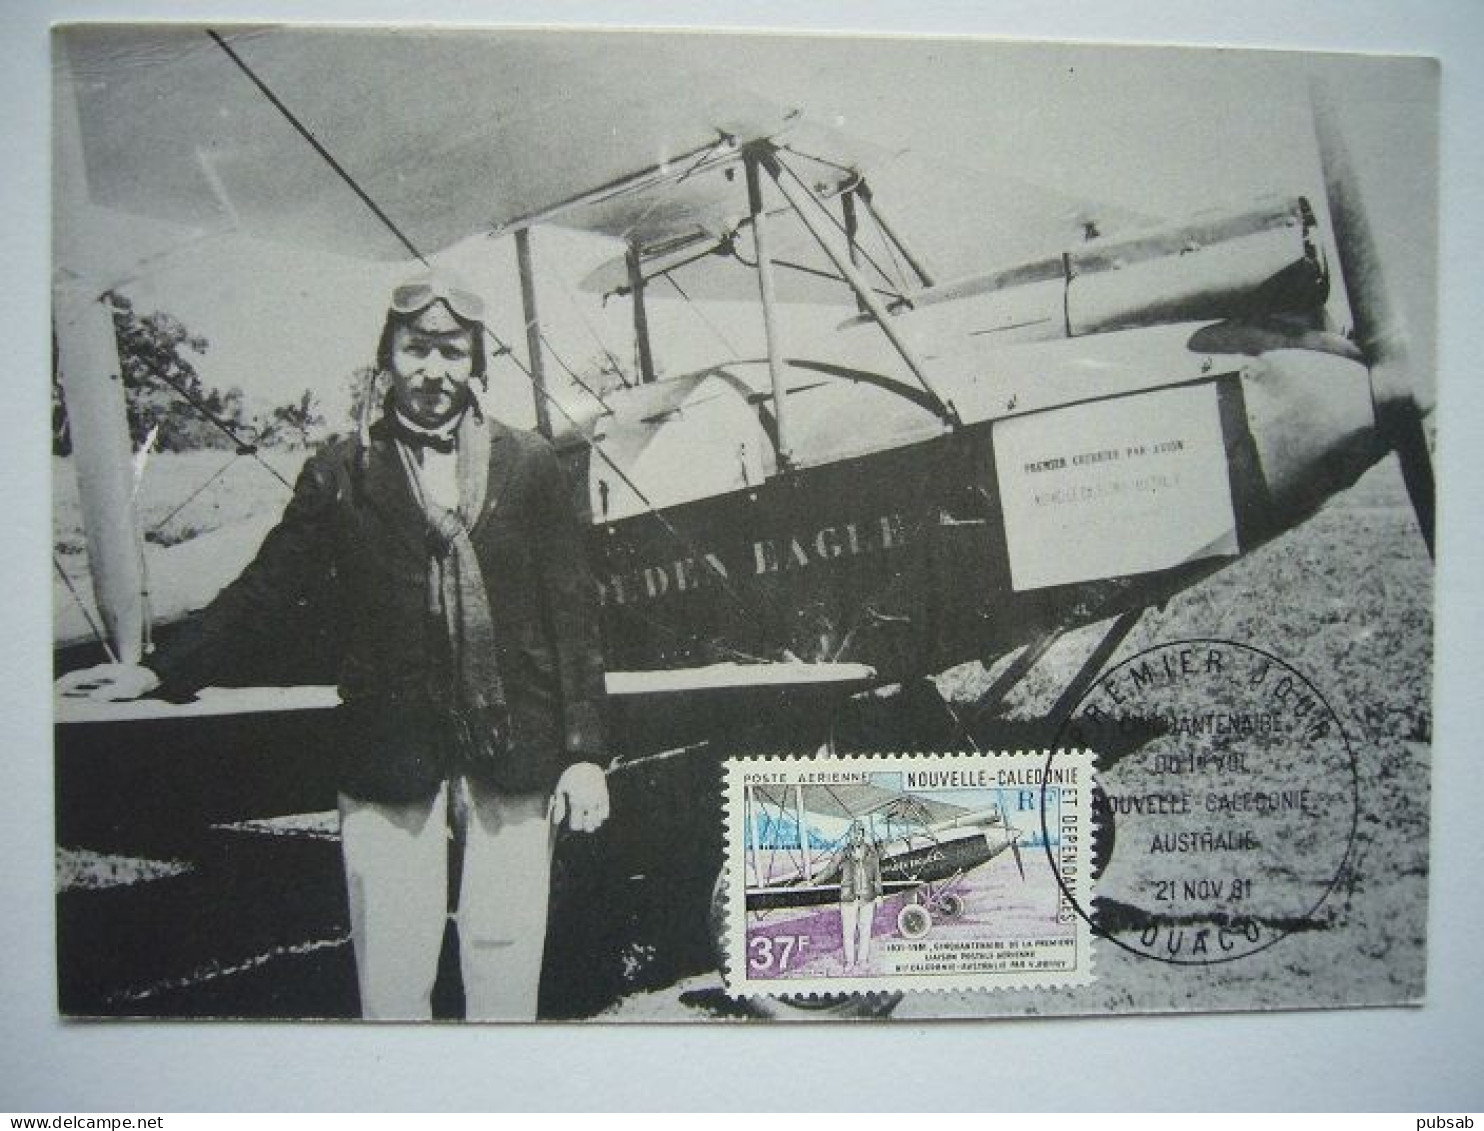 Avion / Airplane / Victor ROFFEY / Golden Eagle / 1ère Liaison Aérienne, Nouvelle Calédonie - Australie 1931 - 1919-1938: Between Wars